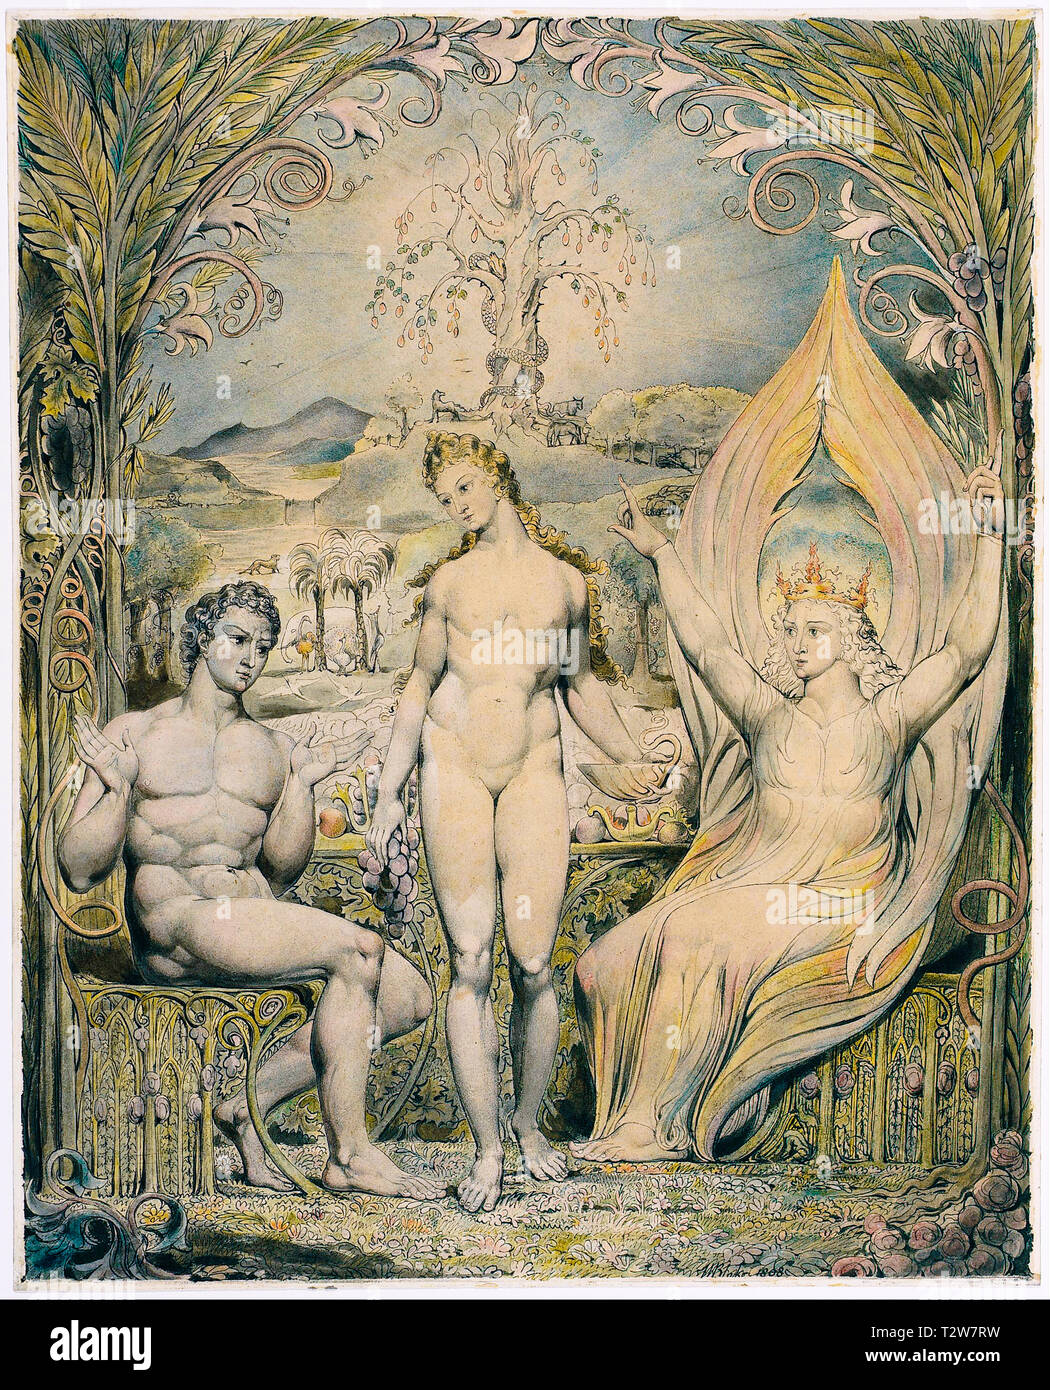 William Blake, l'Archange Raphaël avec Adam et Eve, peinture, plume et encre avec aquarelle, illustration, 1808 Banque D'Images